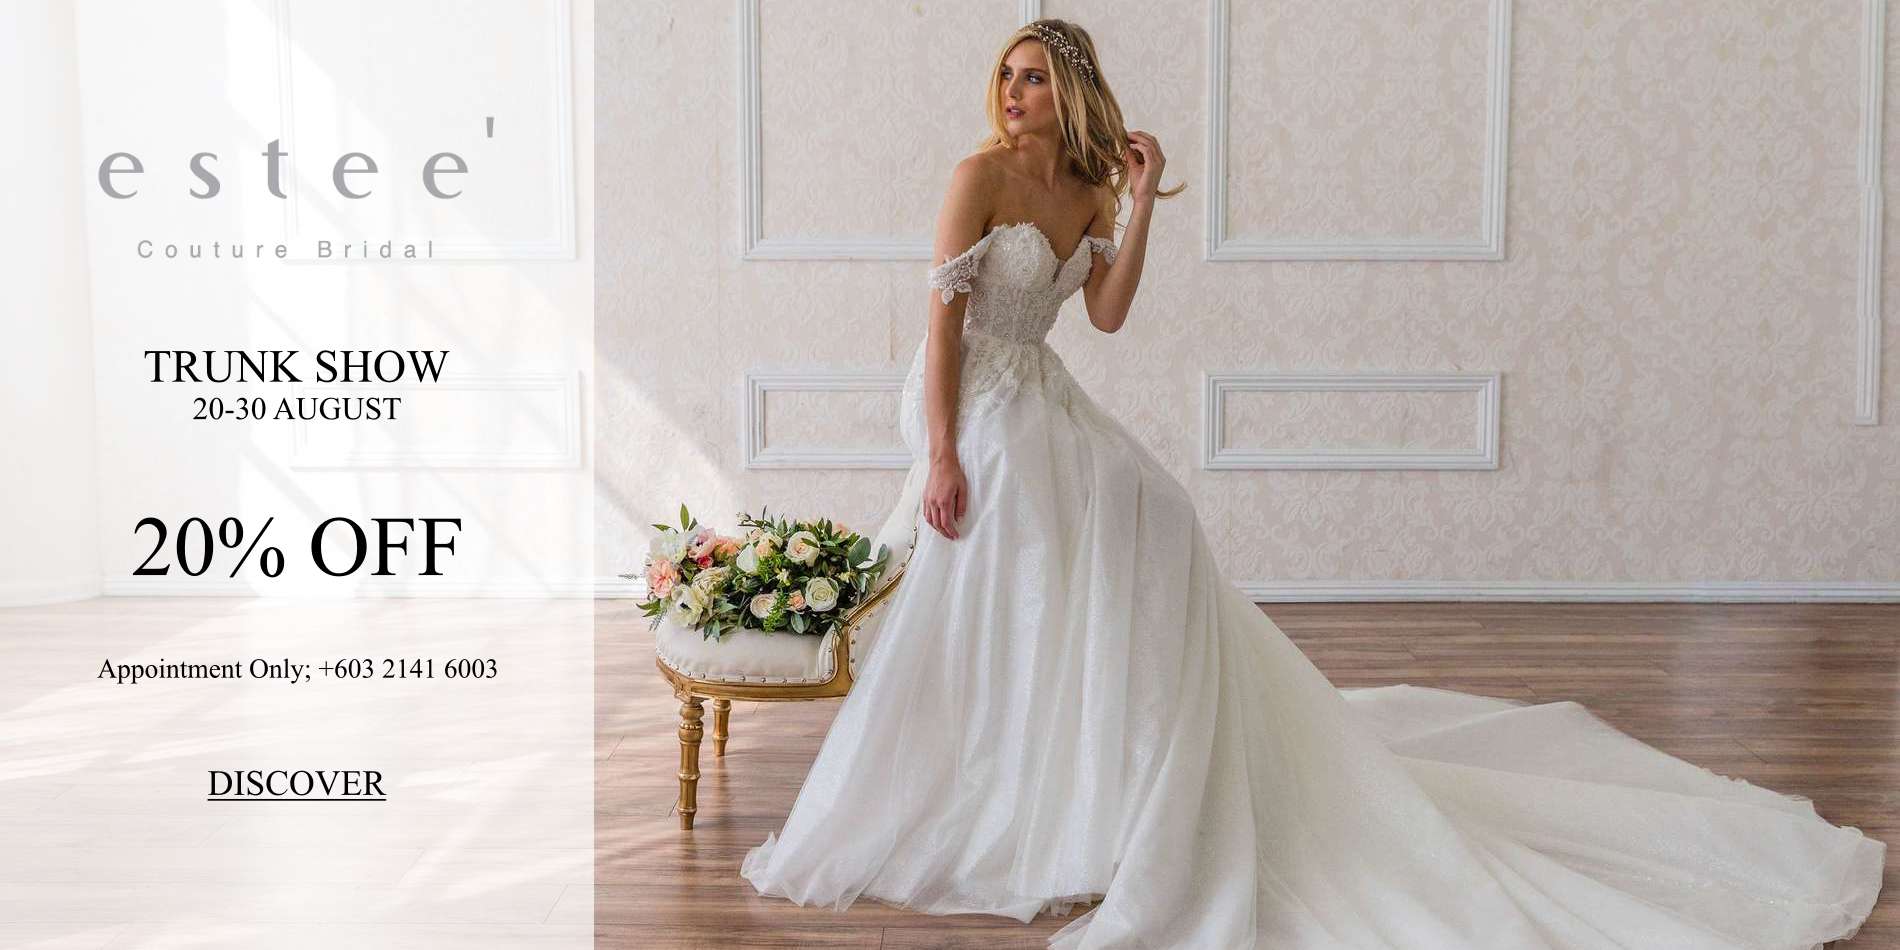 Designer Bridal  Room 2019 Wedding  Dresses  Gowns  